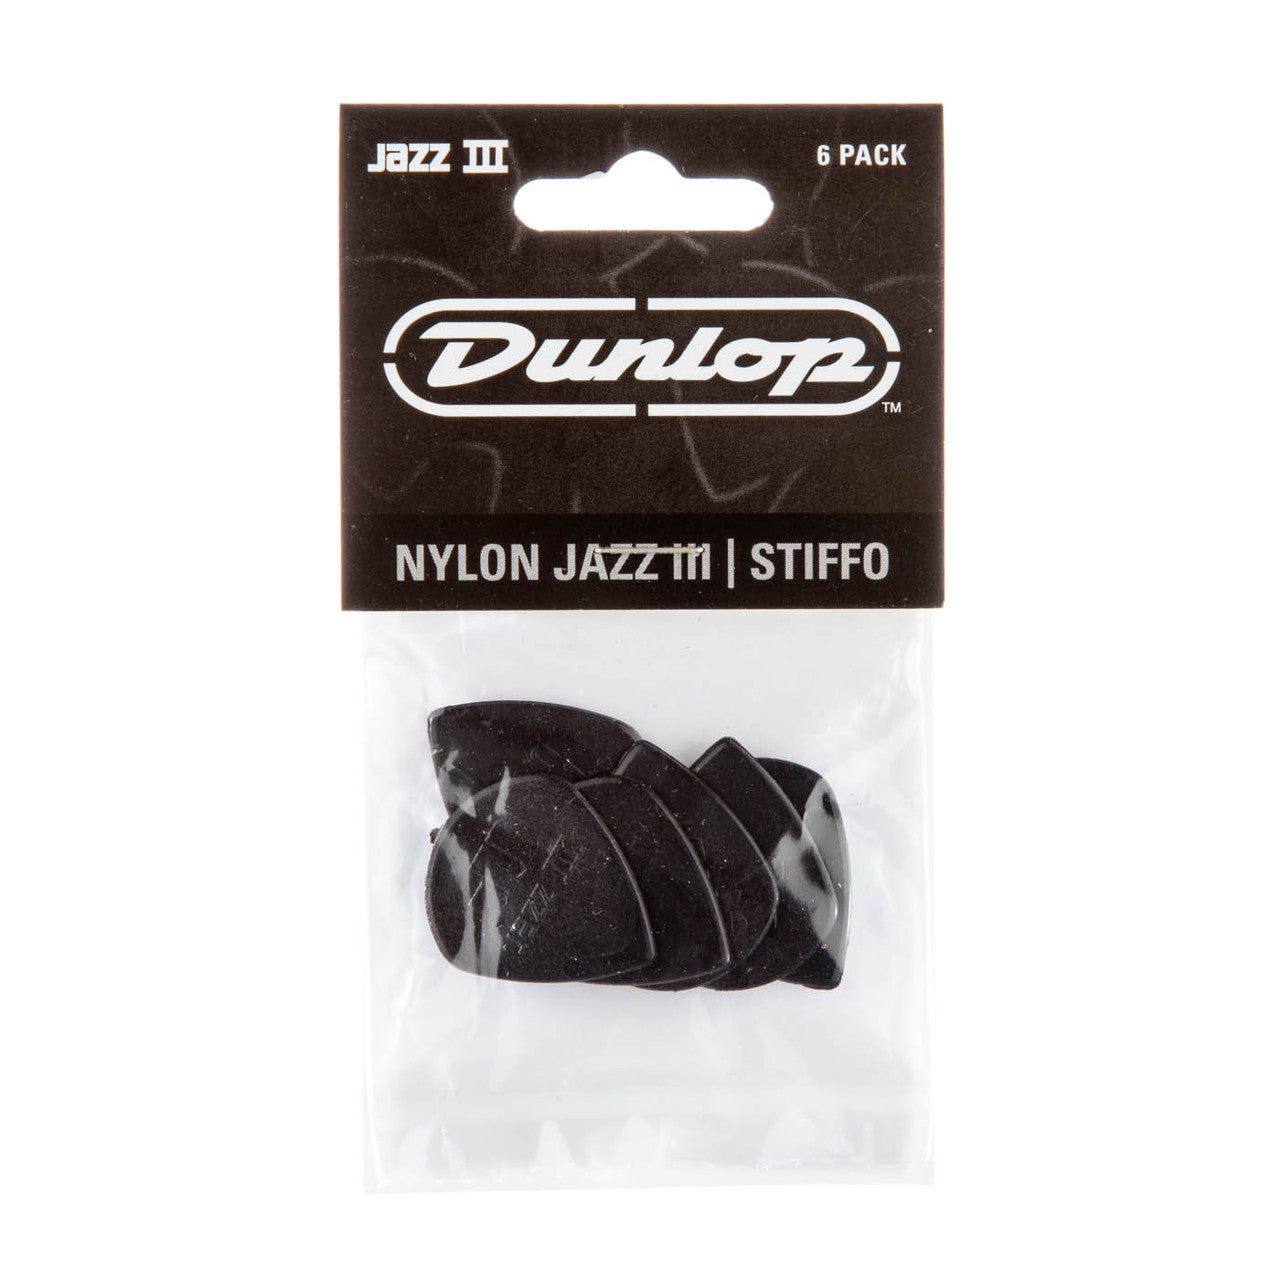 Jim Dunlop Jazz III 6 pack